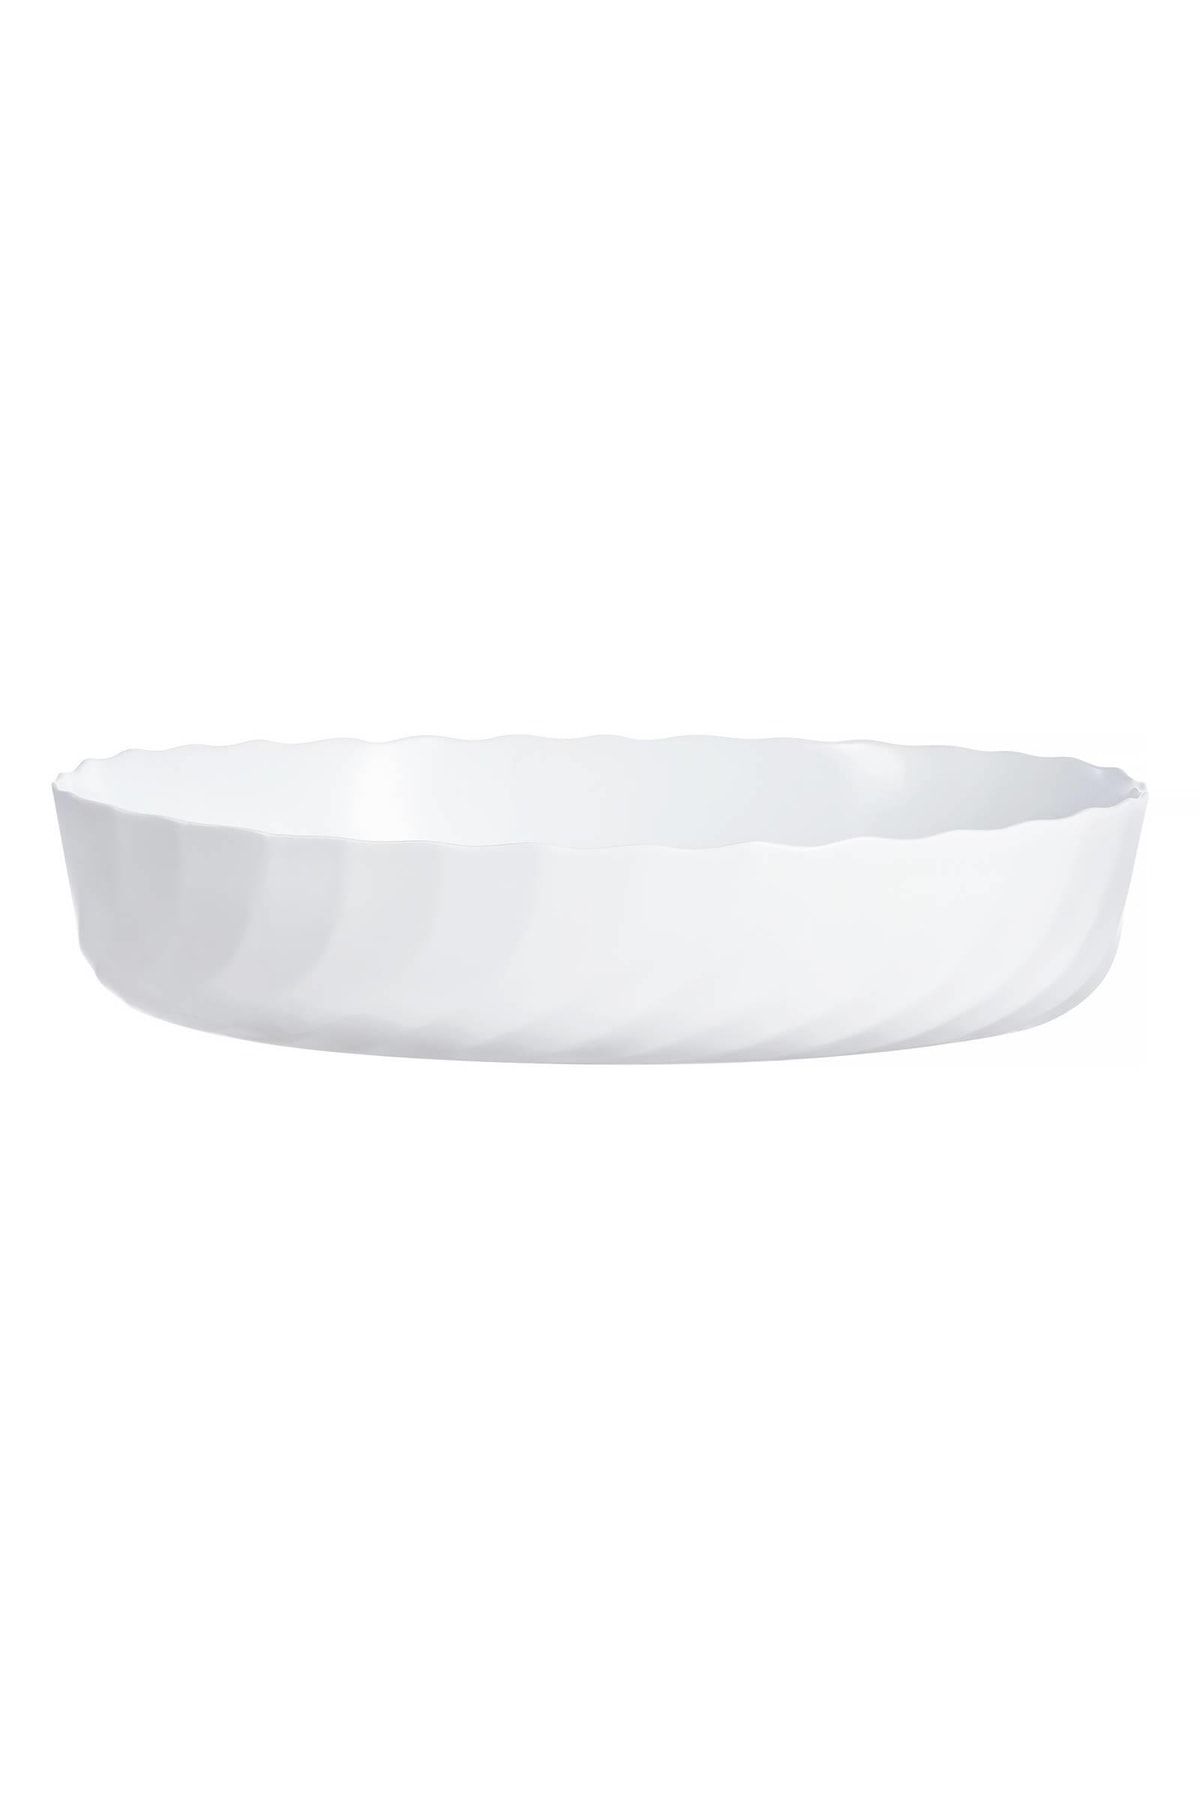 Luminarc Smart Cuisine Oval Beyaz Firin Kabı 36x29cm 4.8l